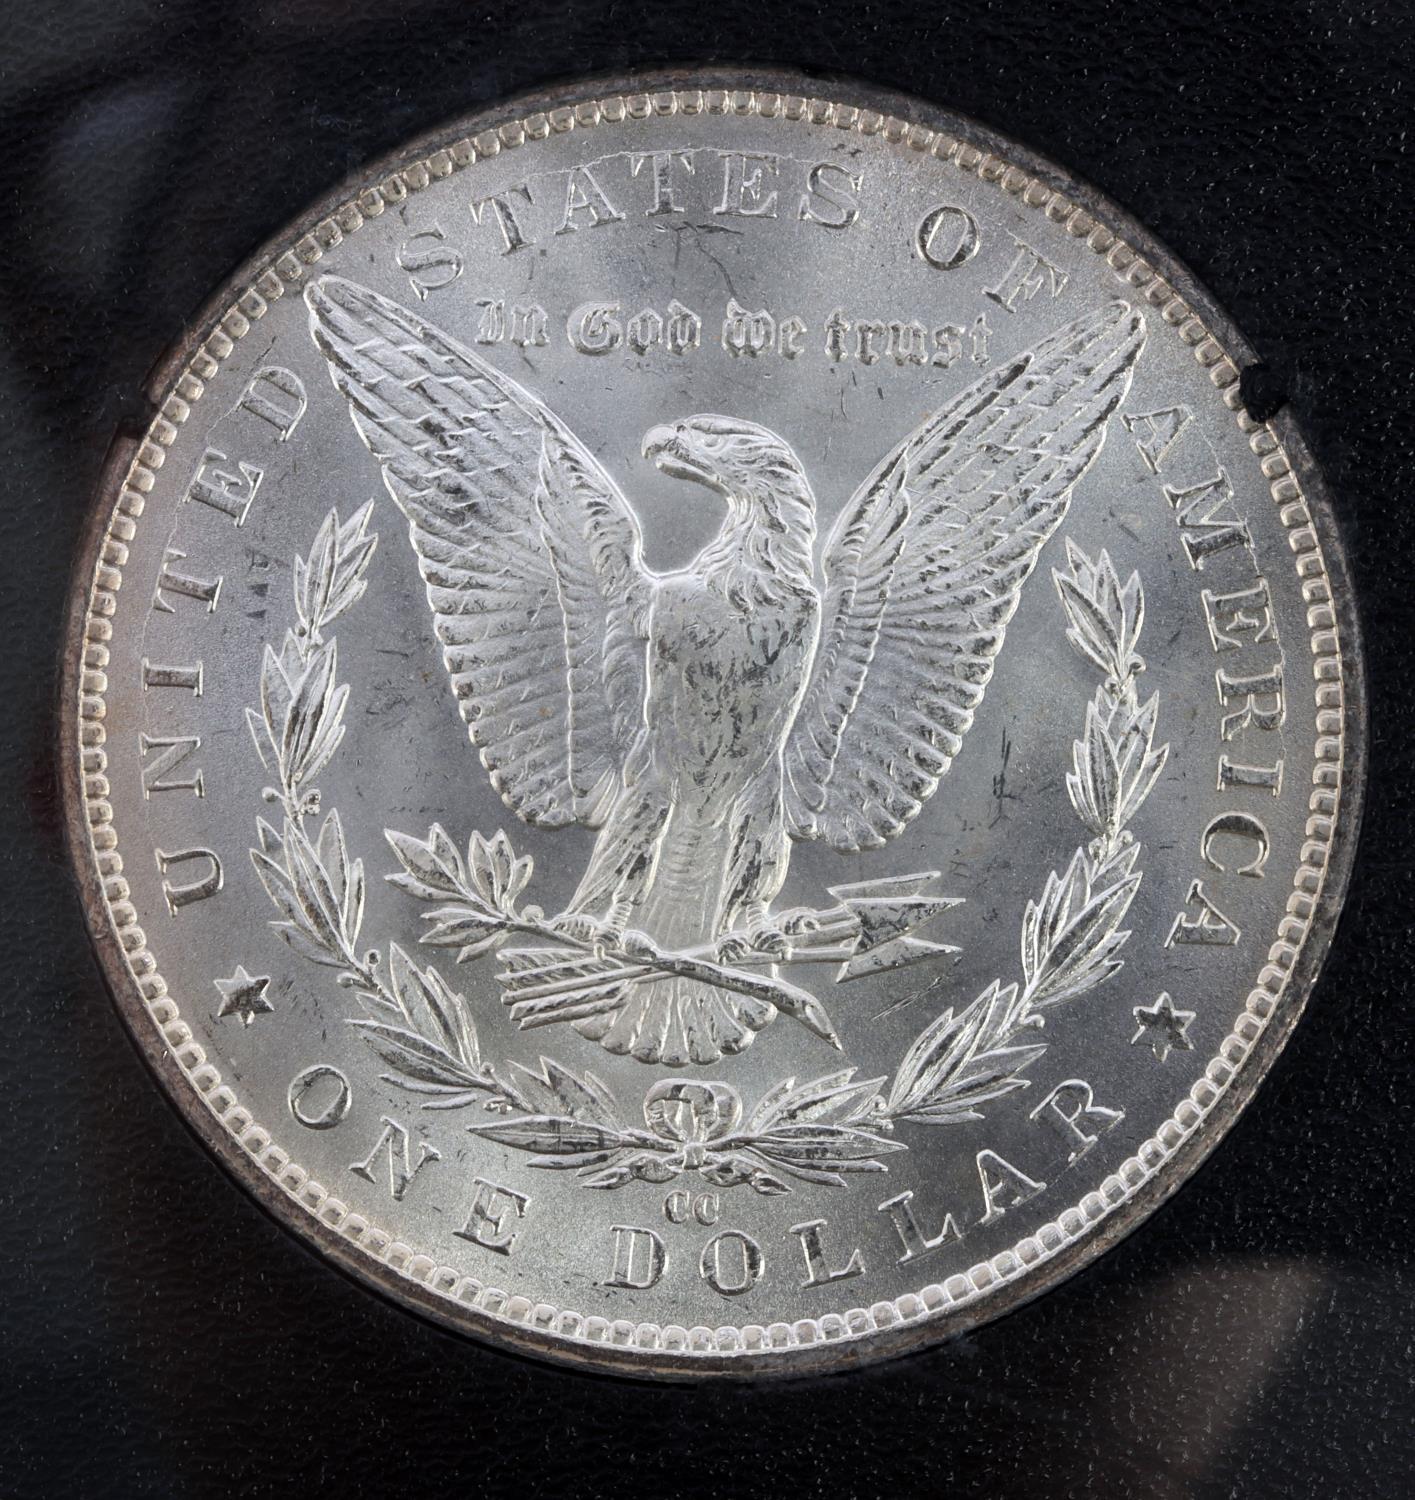 1883-CC CARSON CITY UNC SILVER DOLLAR COIN